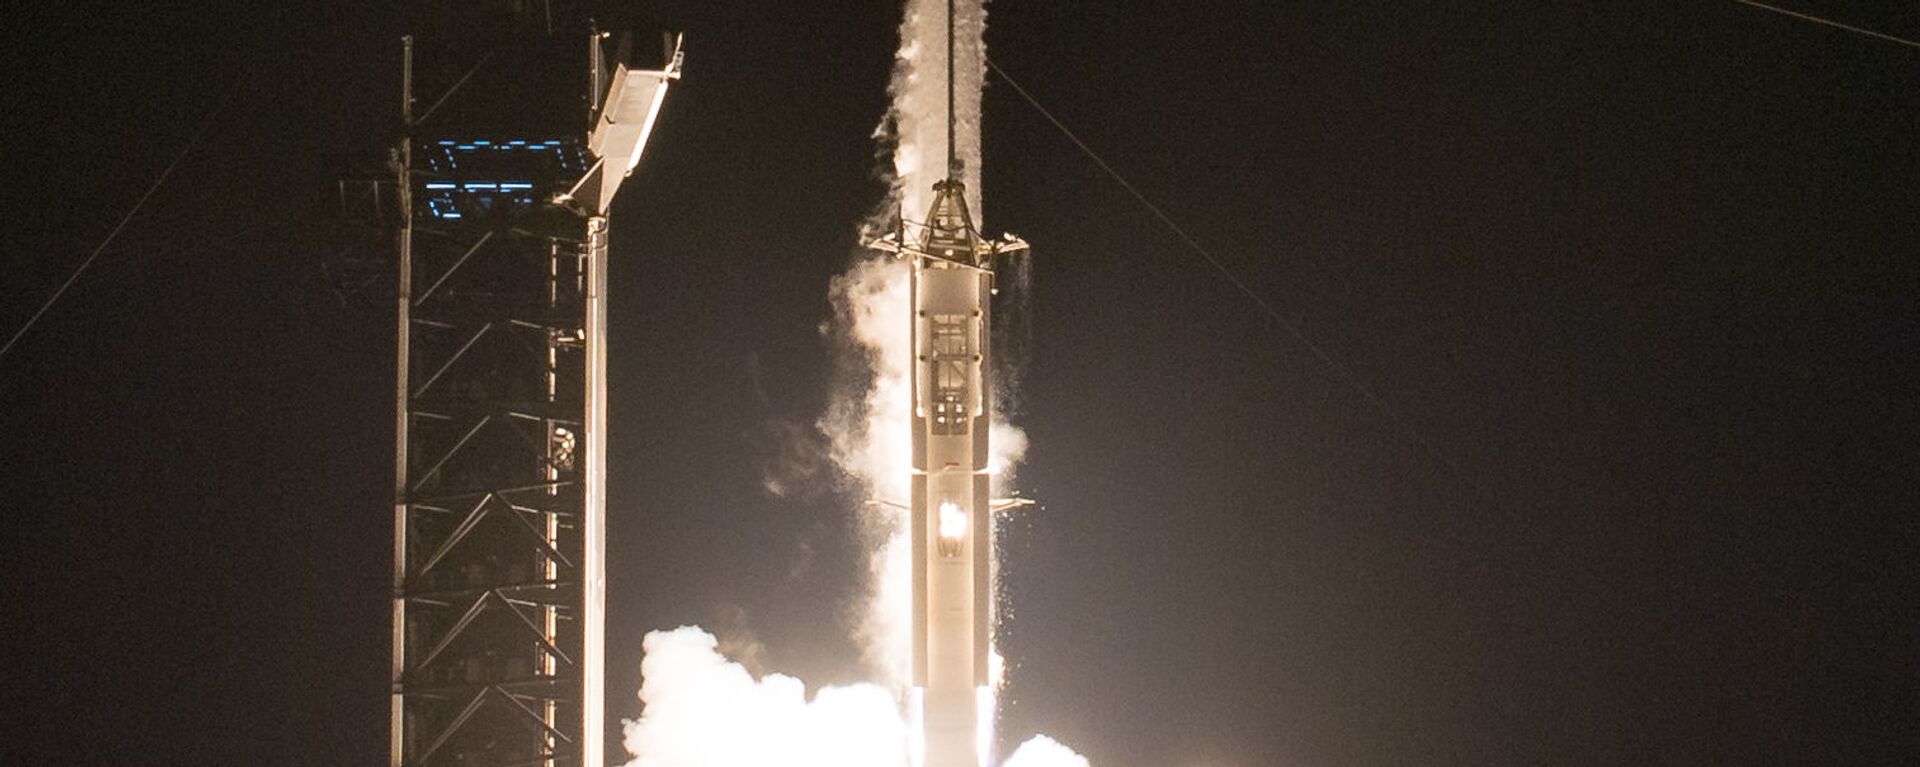 إطلاق مركبة سبيس إكس والتي تحمل اسم كرو دراغون عن طريق صاروخ فالكون 9، من مركز كينيدي للفضاء التابع لناسا في كيب كانافيرال بولاية فلوريدا، الولايات المتحدة 16 نوفمبر 2020 - سبوتنيك عربي, 1920, 30.03.2021